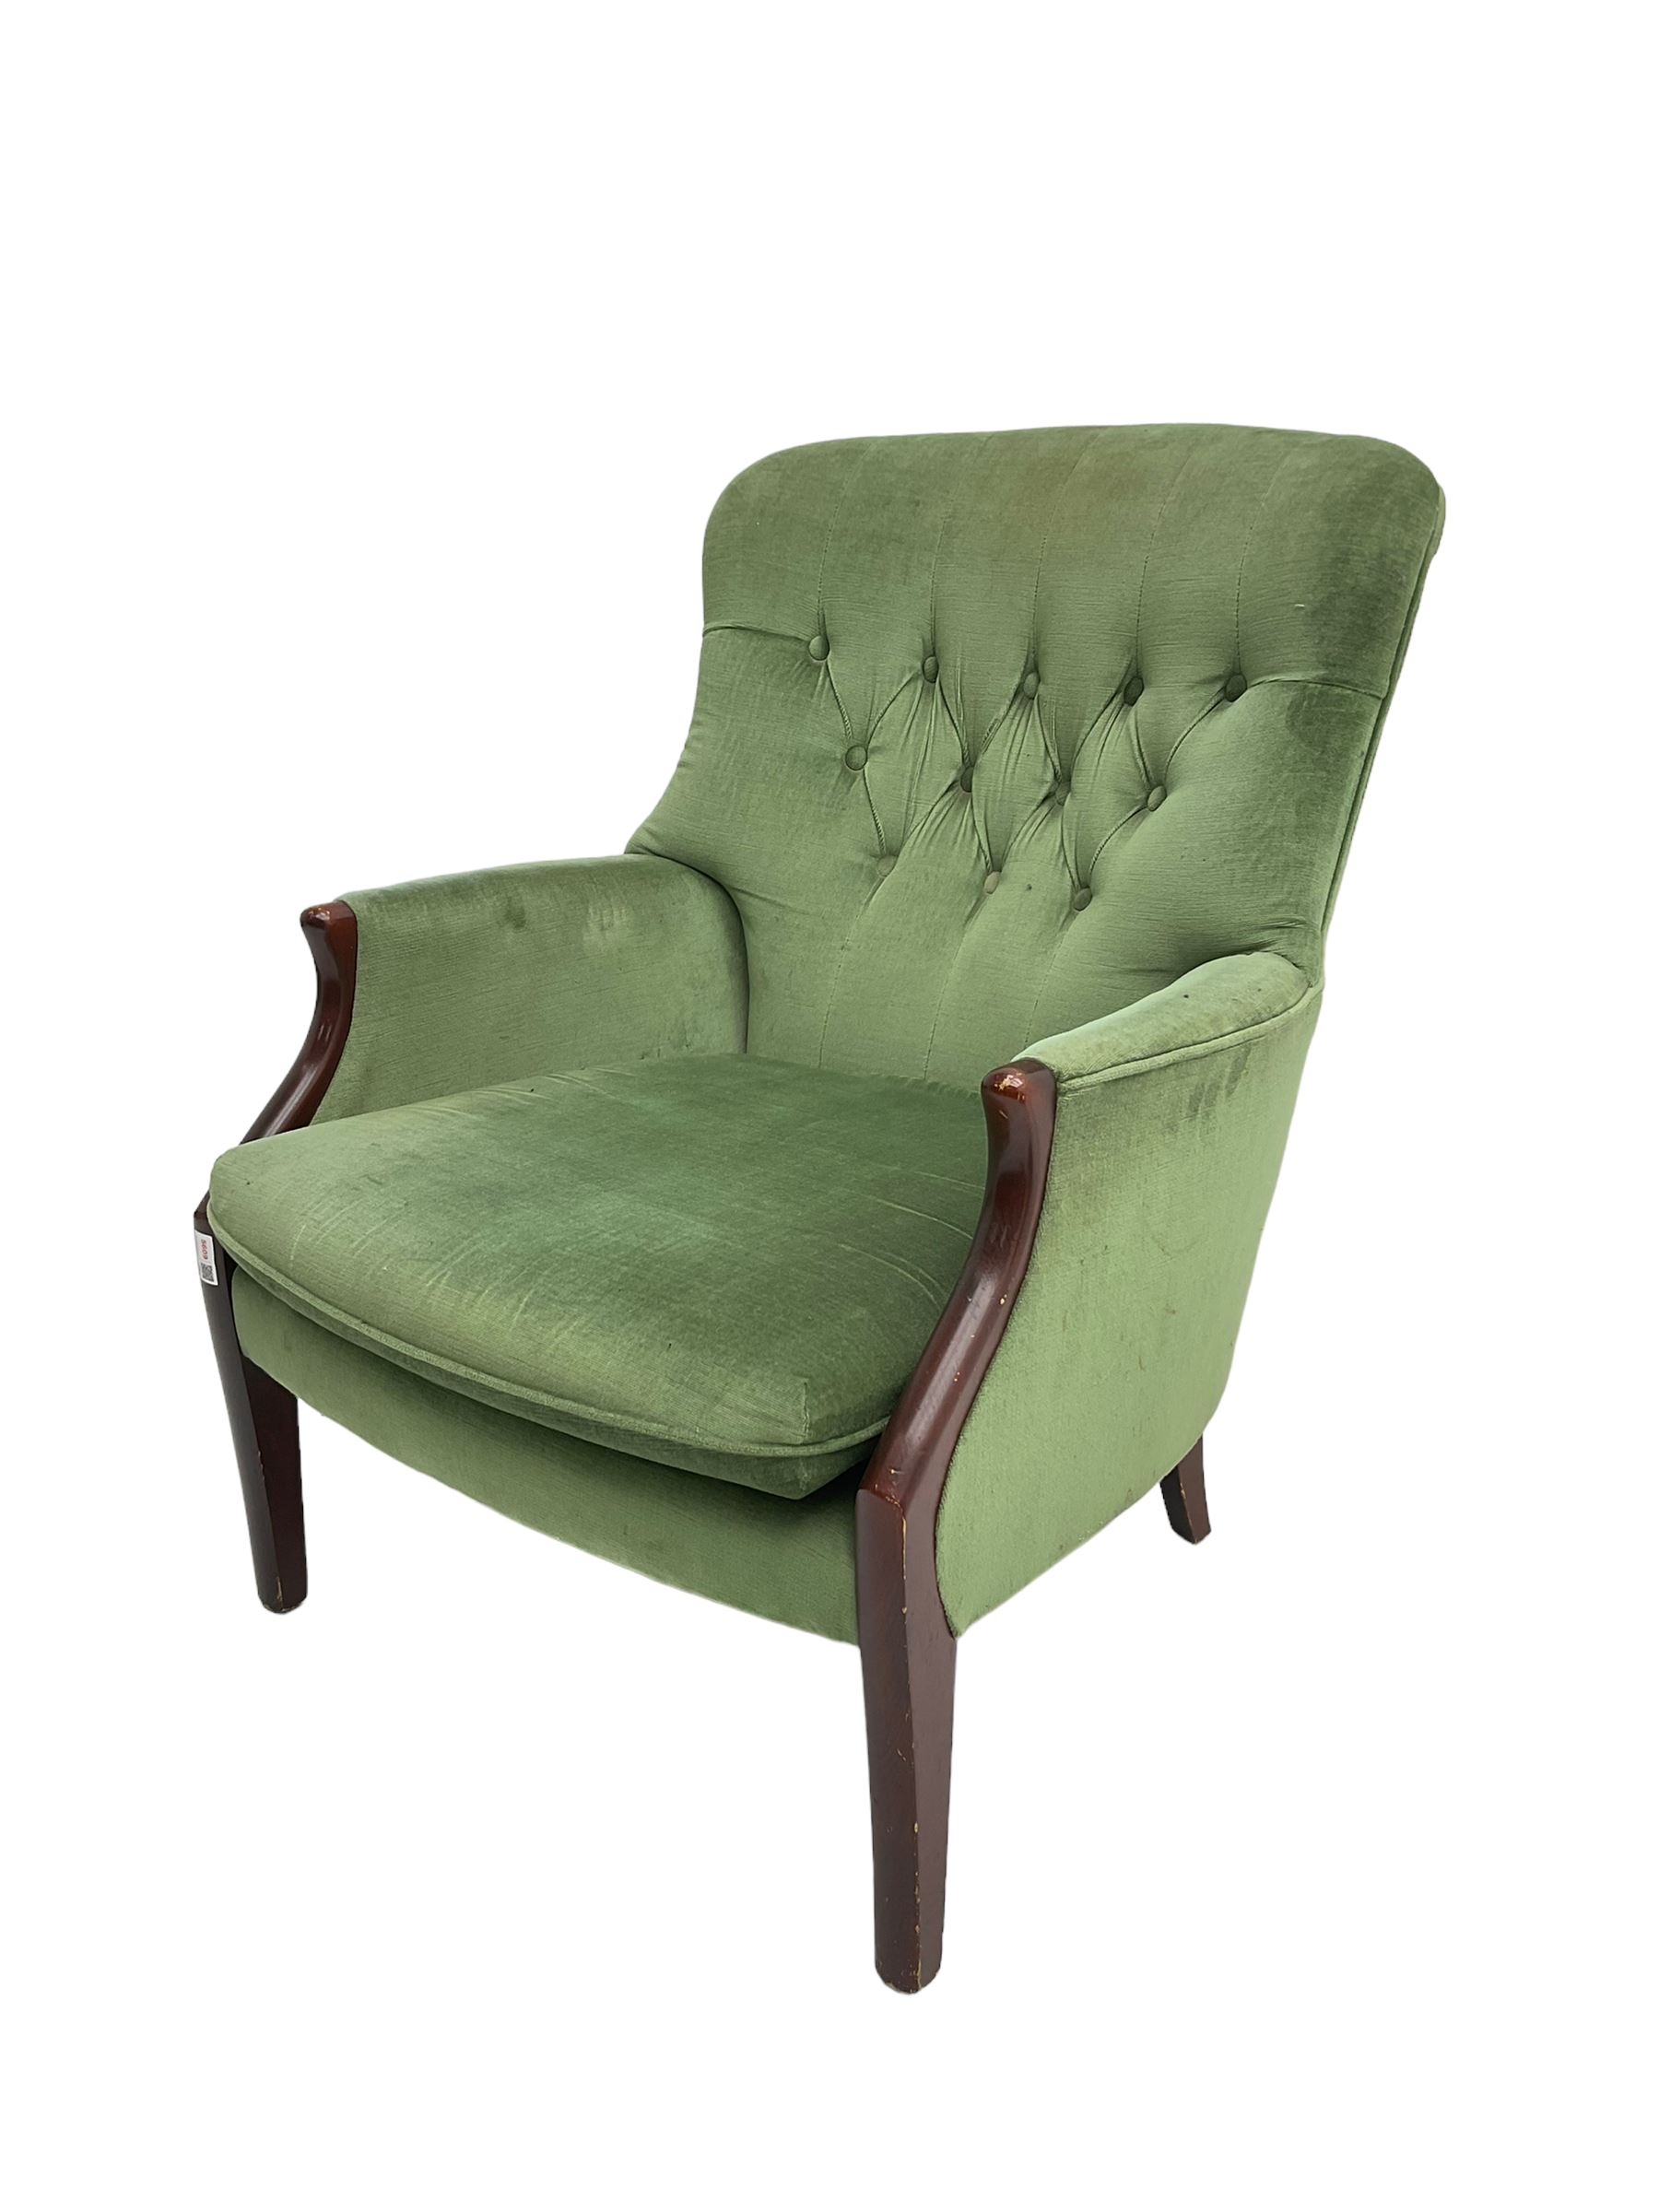 Parker Knoll - hardwood framed armchair - Image 4 of 6